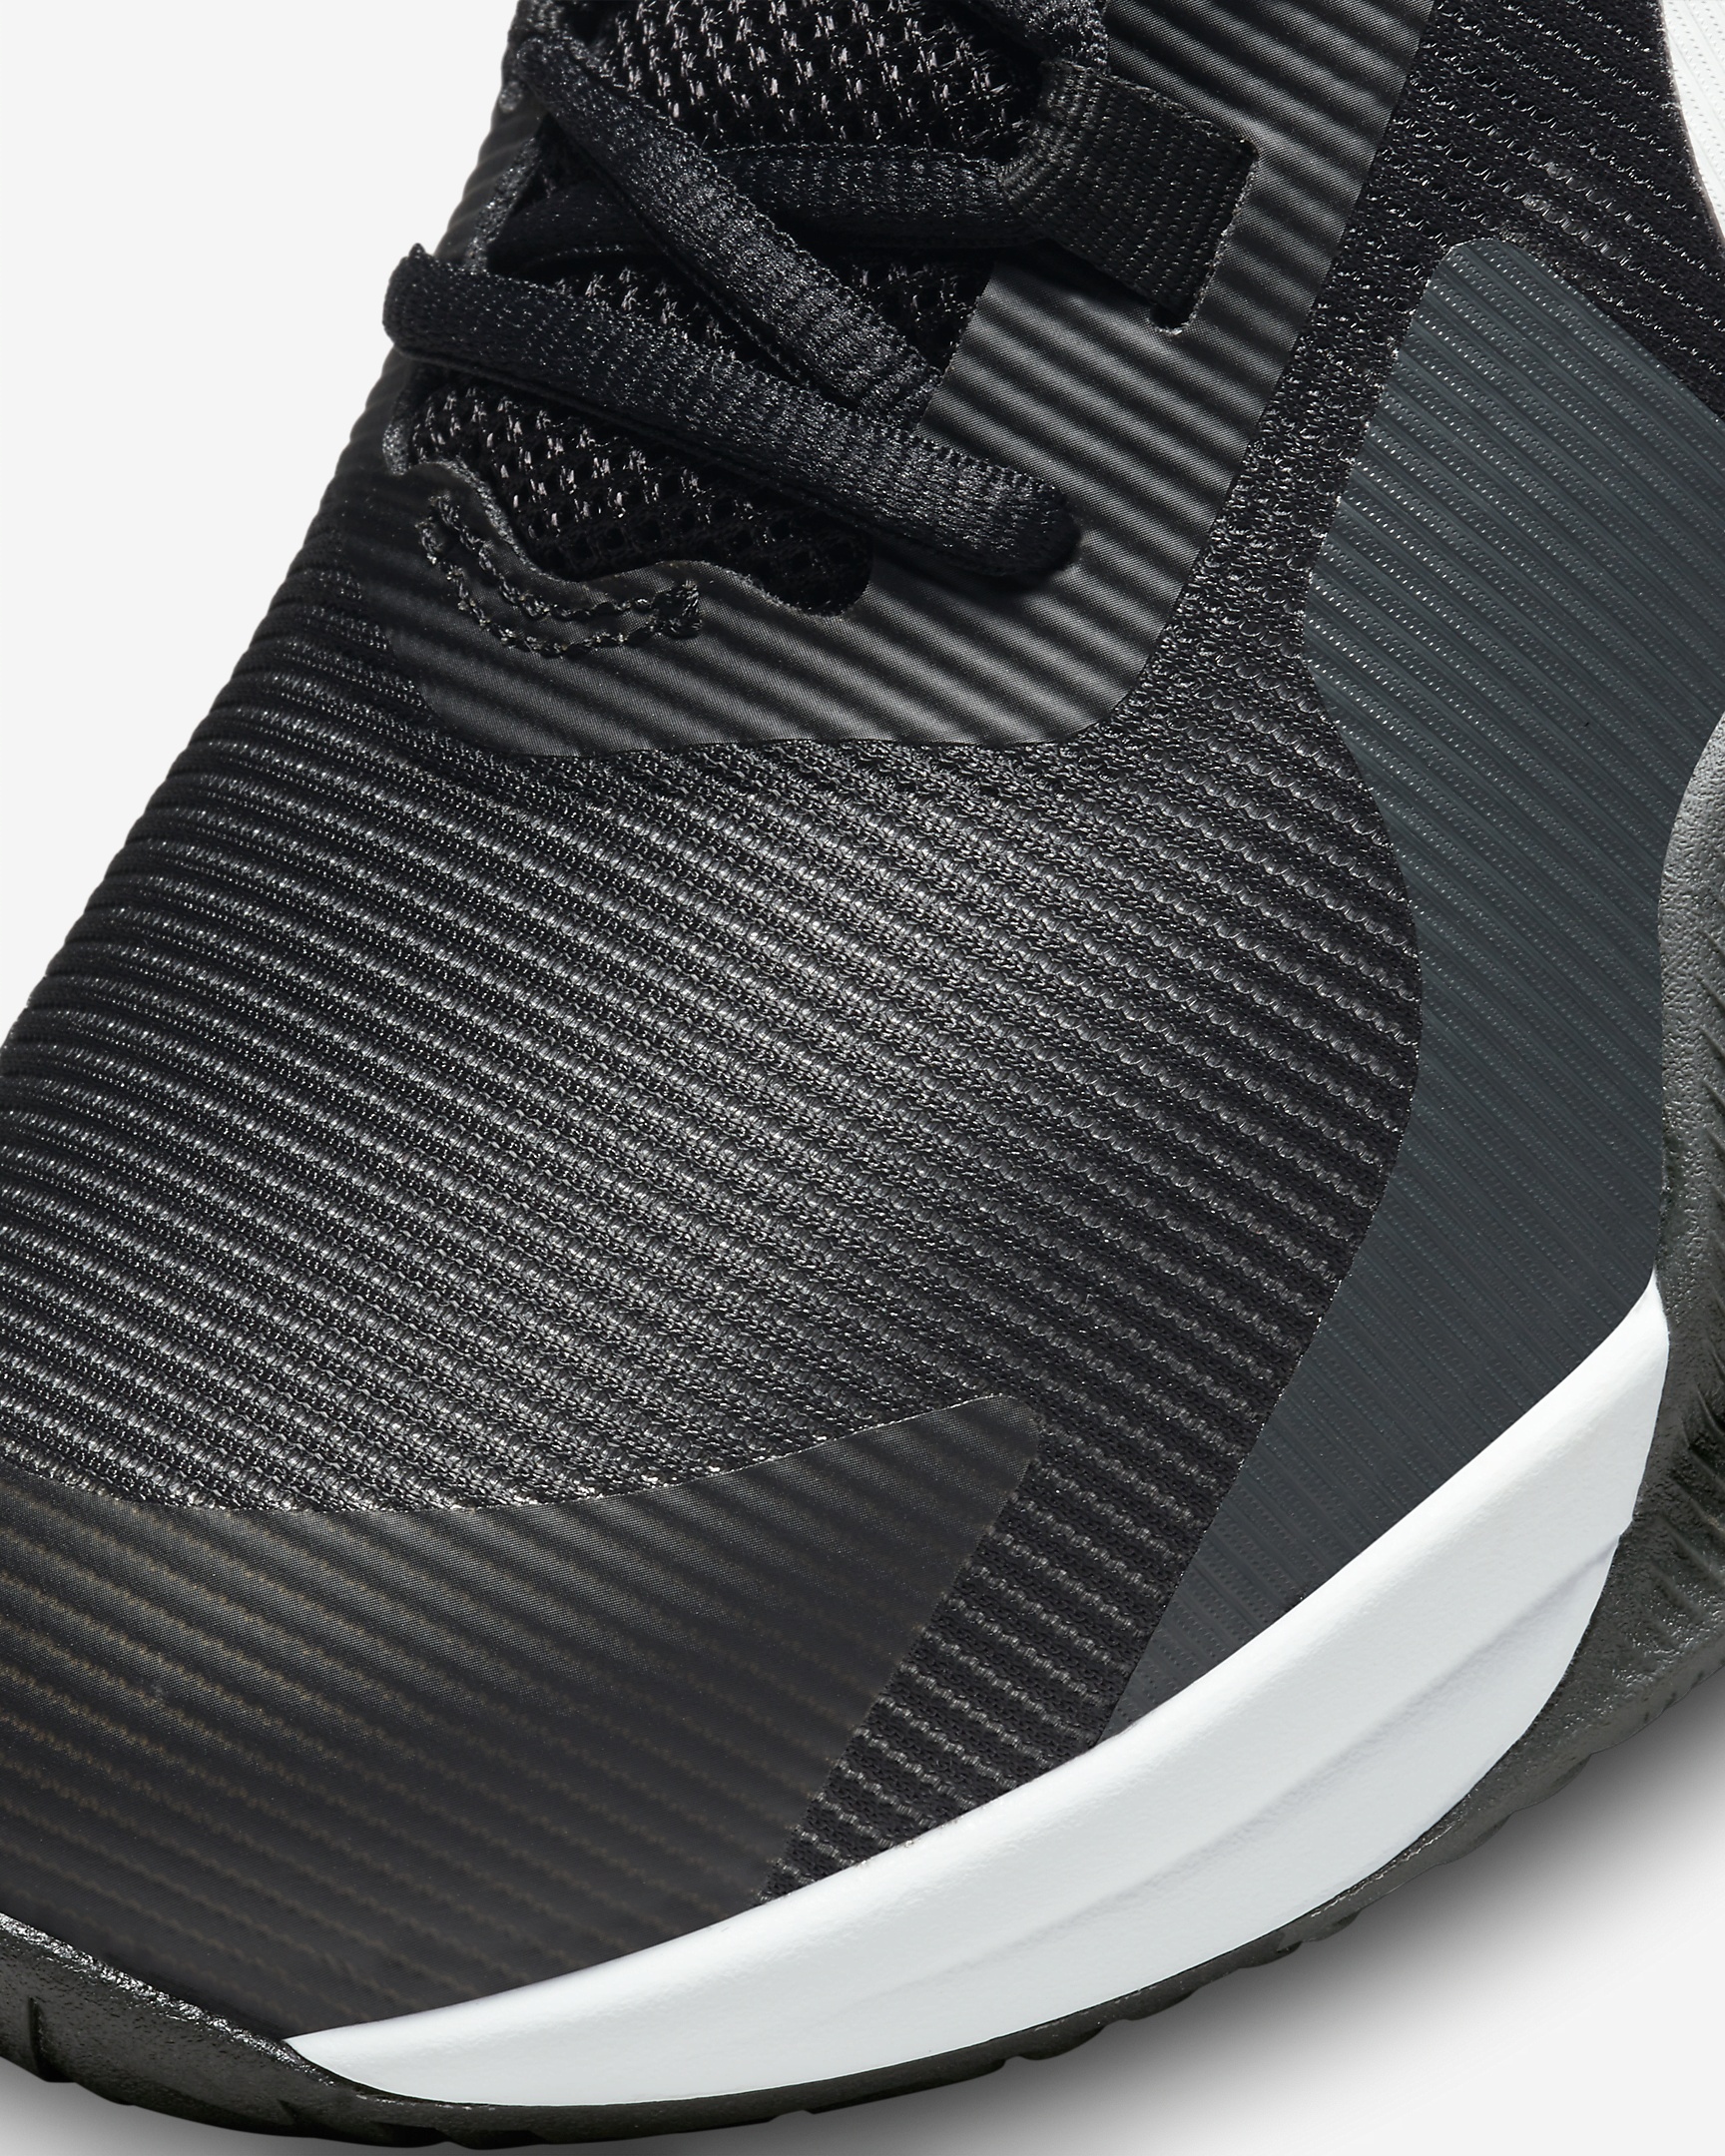 Nike Impact 4 Basketball Shoes - 7